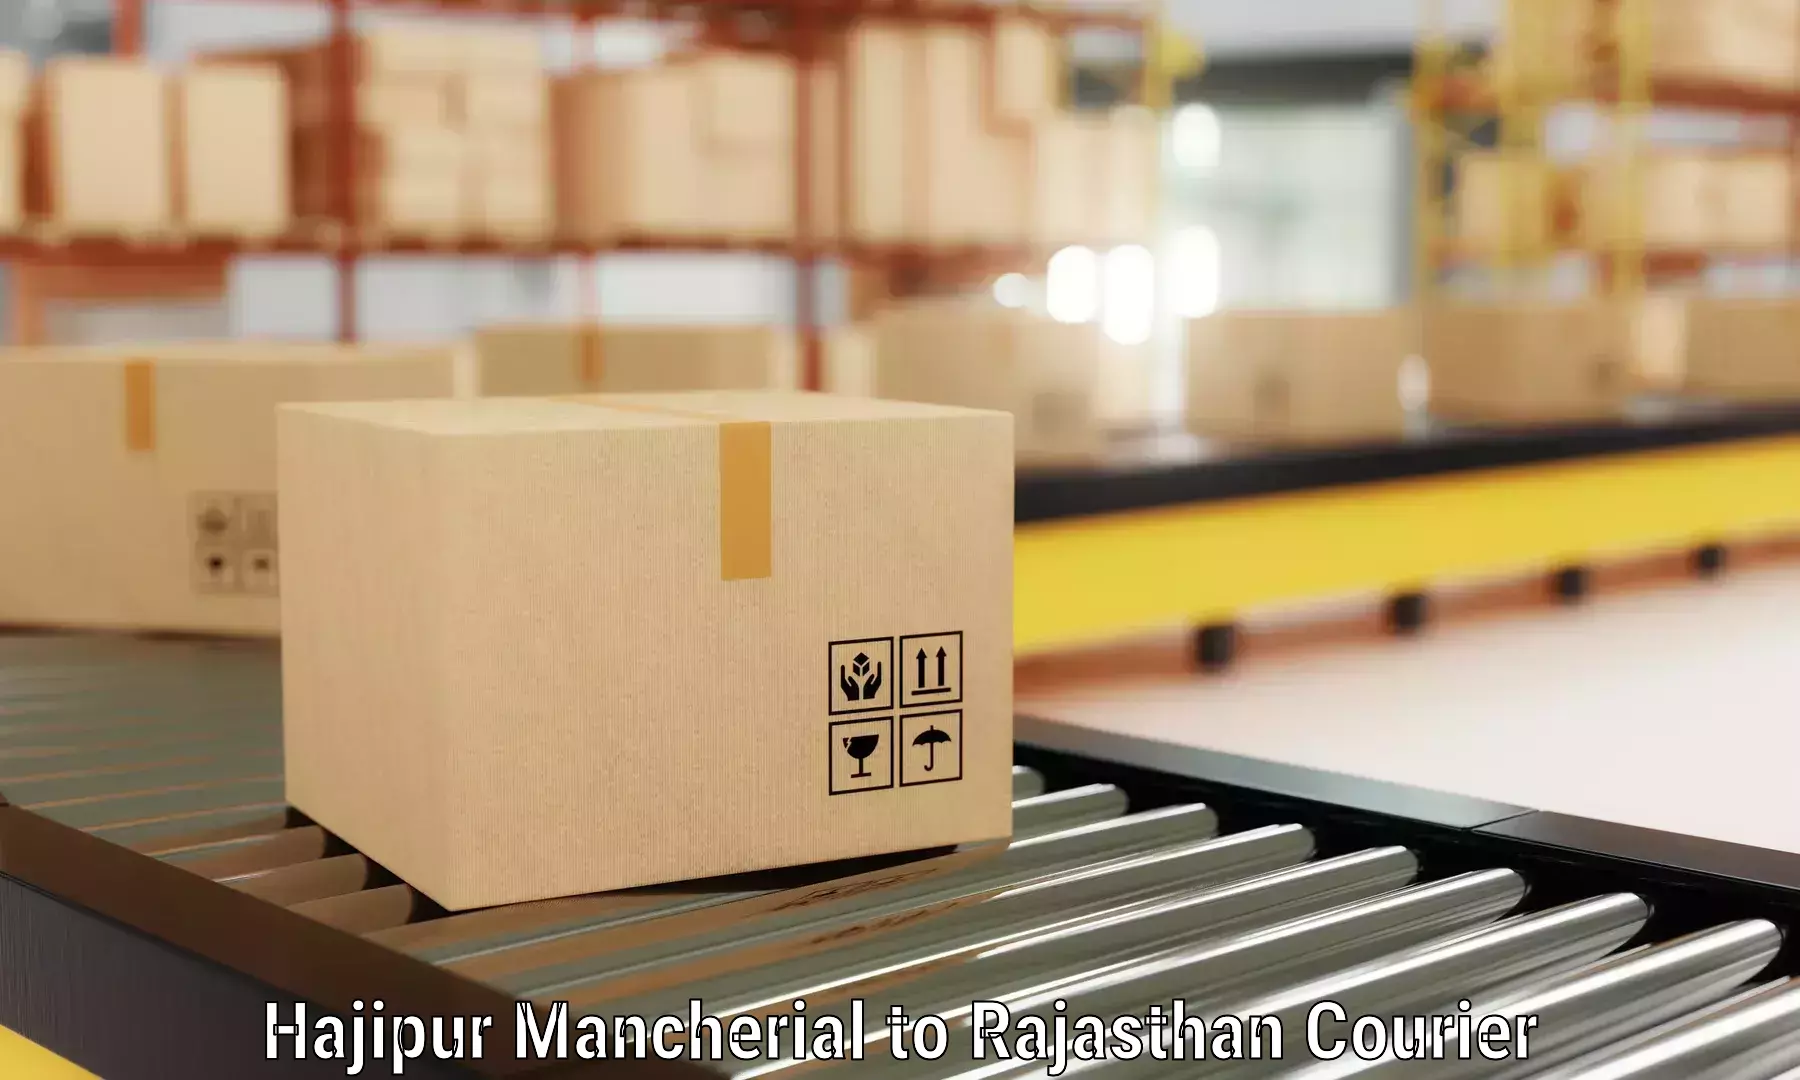 Furniture transport specialists Hajipur Mancherial to IIT Jodhpur